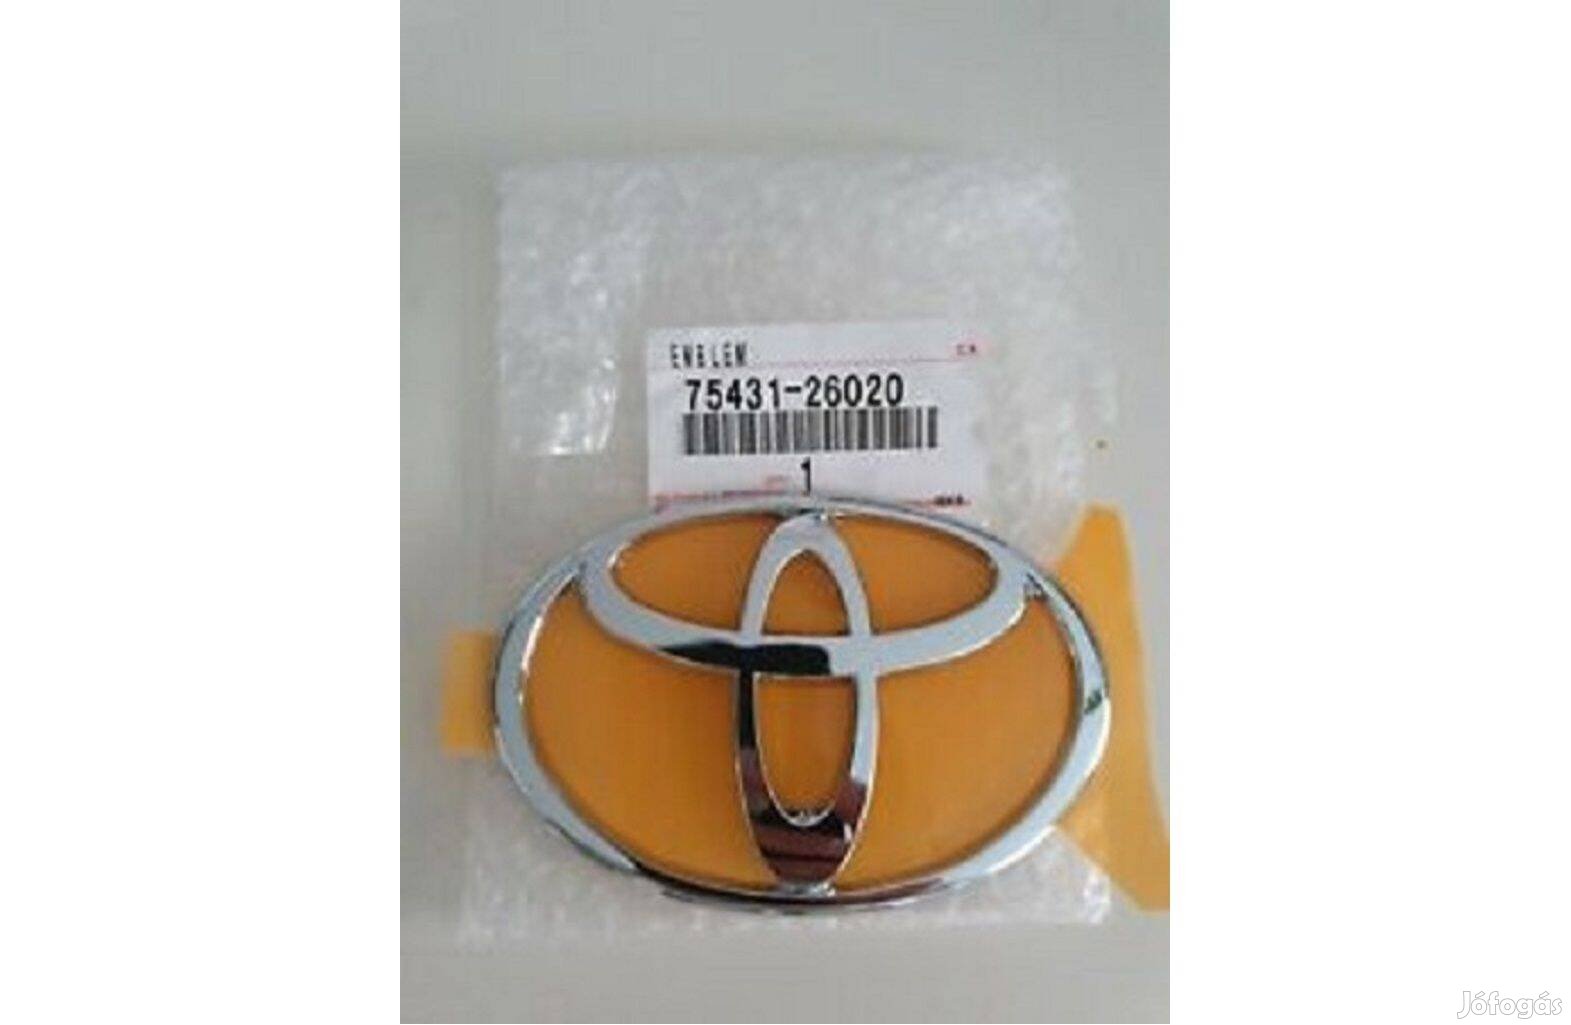 Toyota HI-ACE Embléma eladó. Cikkszám:75431-26020